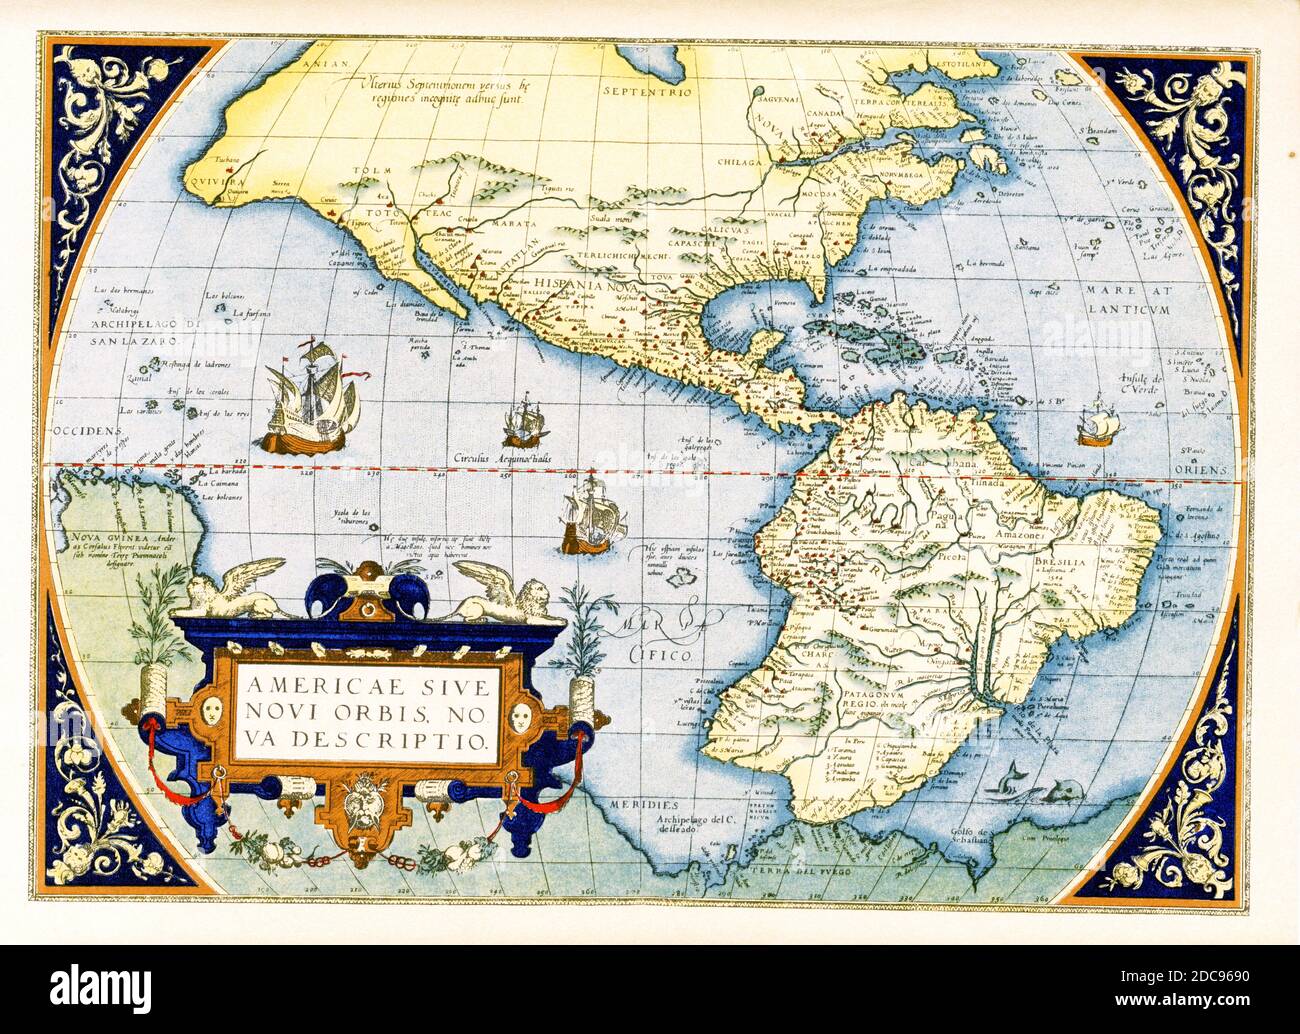 Abraham Ortelius Karte der Amerikas - Americae sive Novi Orbis, Nova Descriptio. Die erste Platte dieser Karte, die ursprünglich 1570 veröffentlicht wurde, basiert auf der mehrblattigen Weltkarte von Gerard Mercator aus dem Jahr 1569. Diese von Frans Hogenberg gravierte Karte wurde zu einer der berühmtesten einflussreichsten Karten der Neuen Welt und zur Grundlage für eine große Menge zukünftiger Karten Amerikas. Abraham Ortelius (1527-1598) war ein niederländischer Kartograph, Geograph und Kosmograph, der konventionell als Schöpfer des ersten modernen Atlas, des Theatrum Orbis Terrarum, anerkannt wurde. Stockfoto